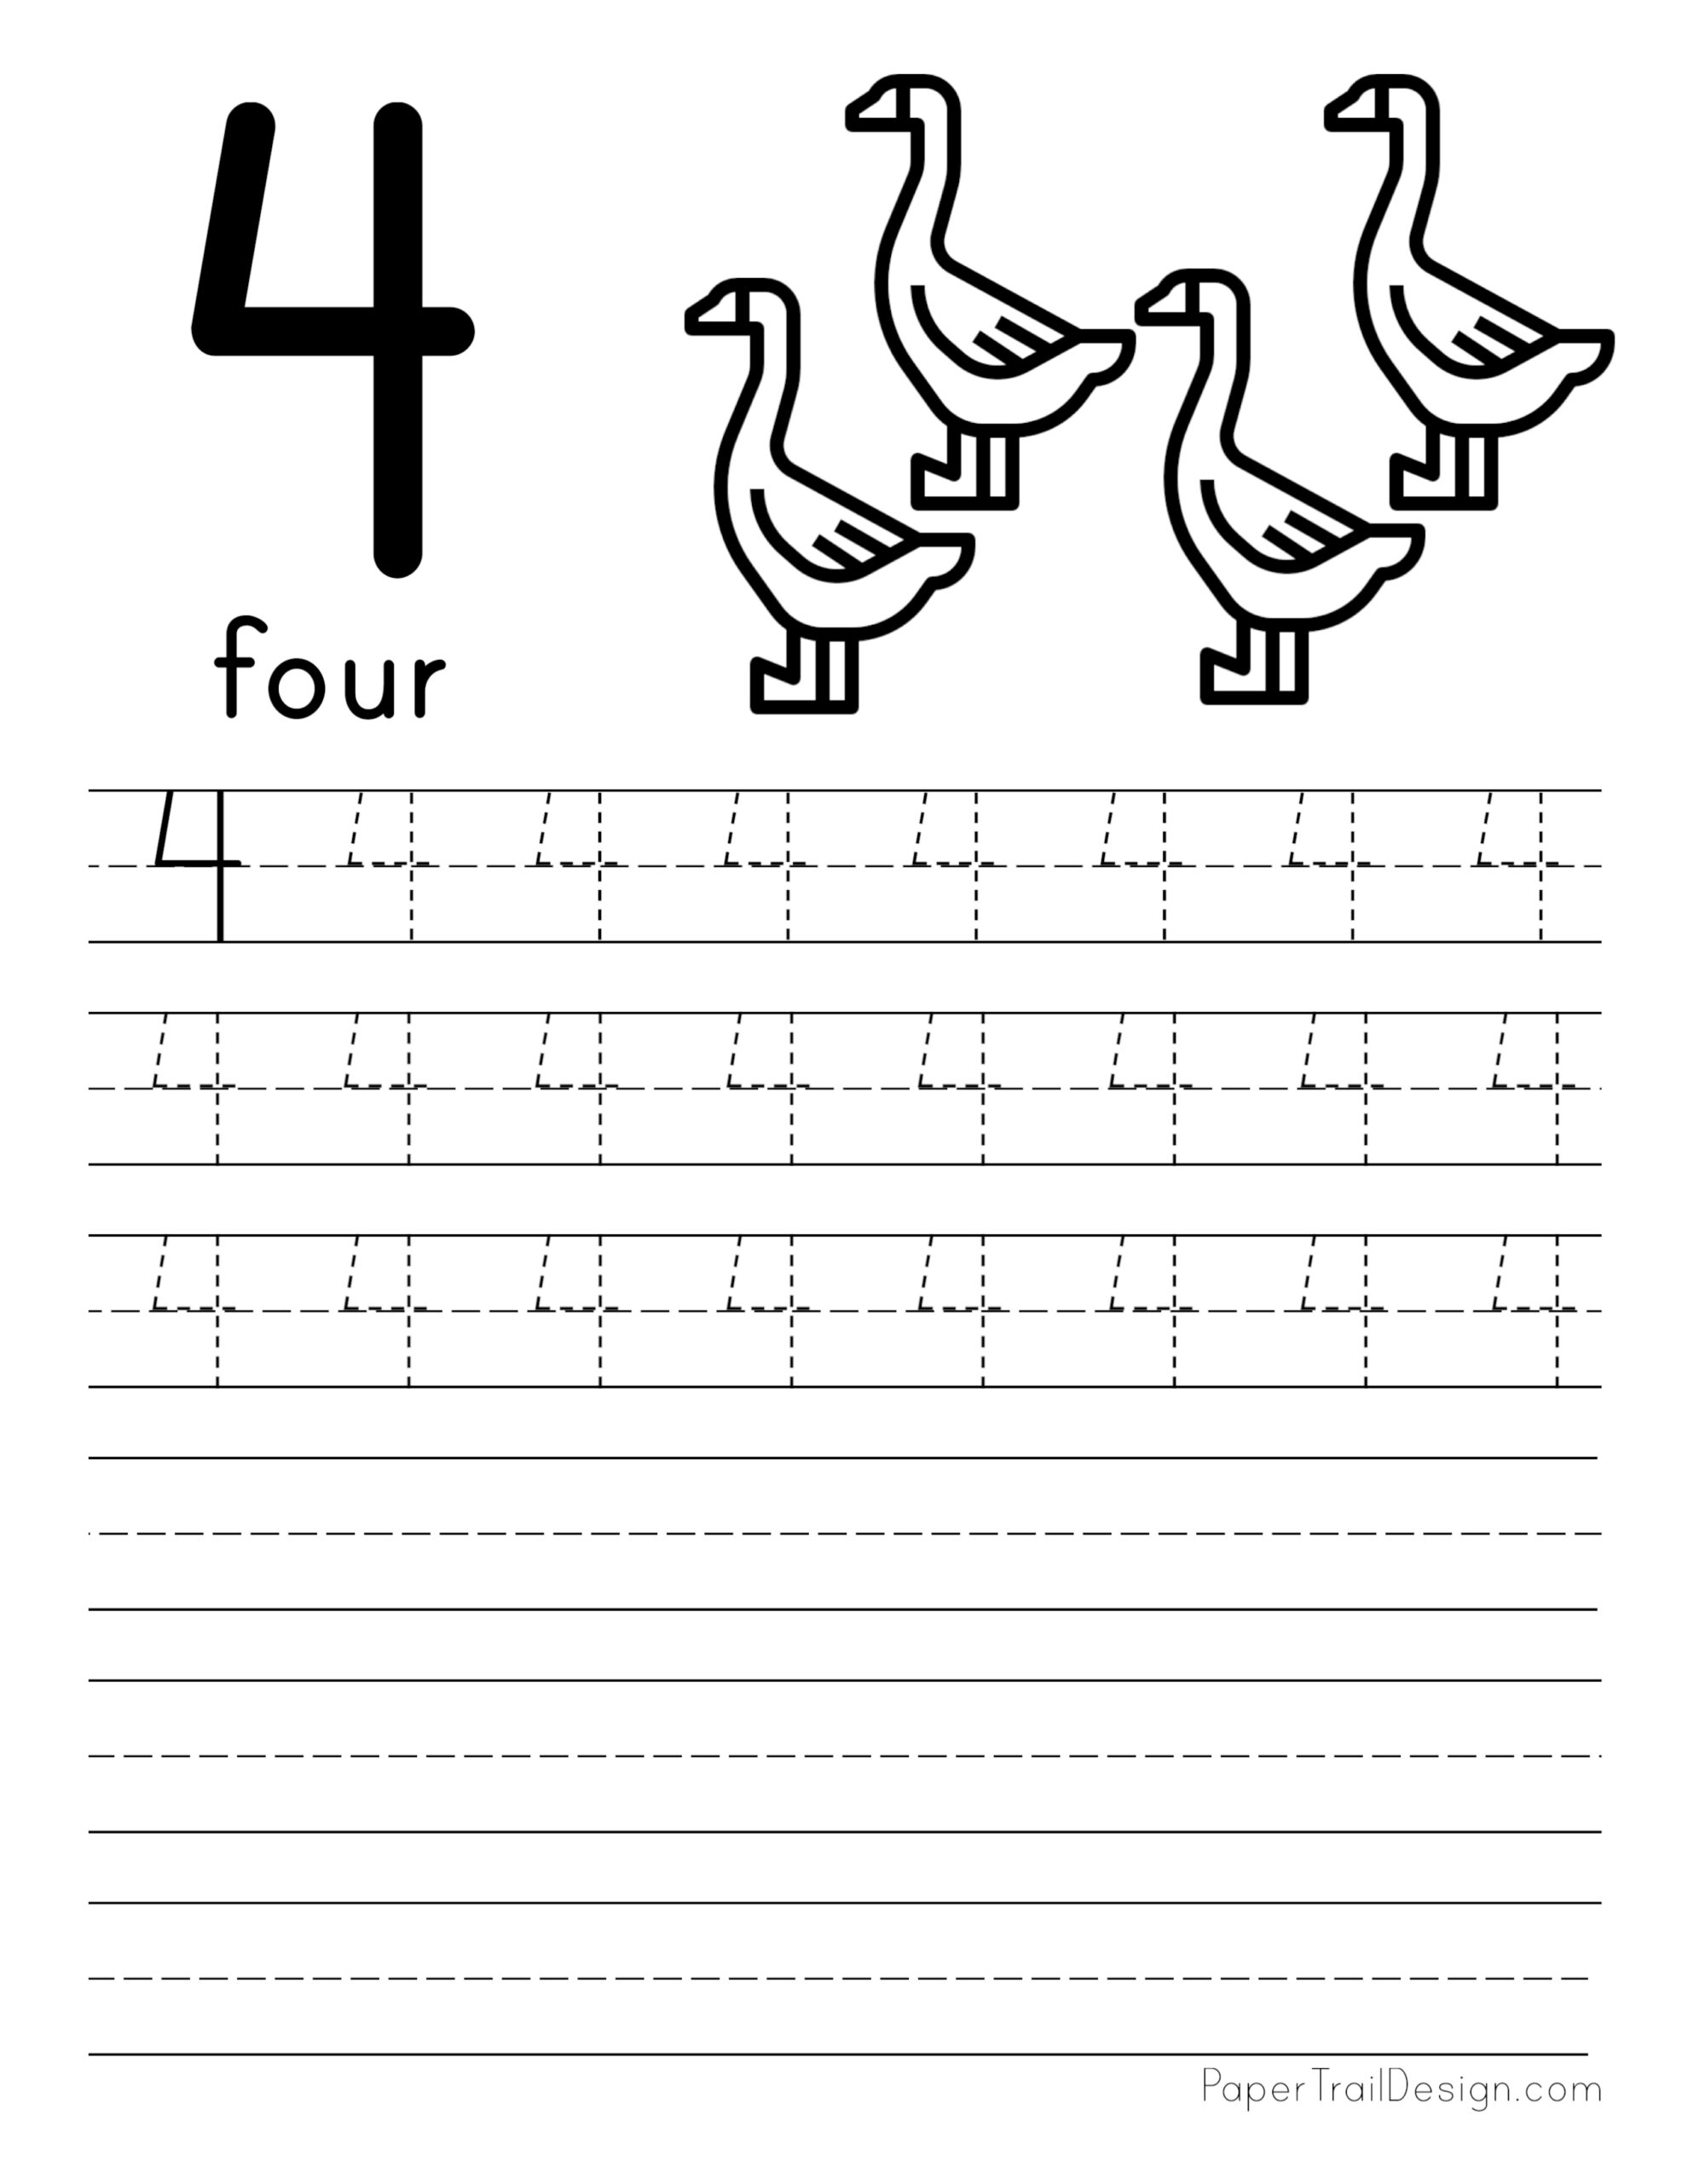 Tracing Number 4 Worksheets For Kindergarten Goimages Vision